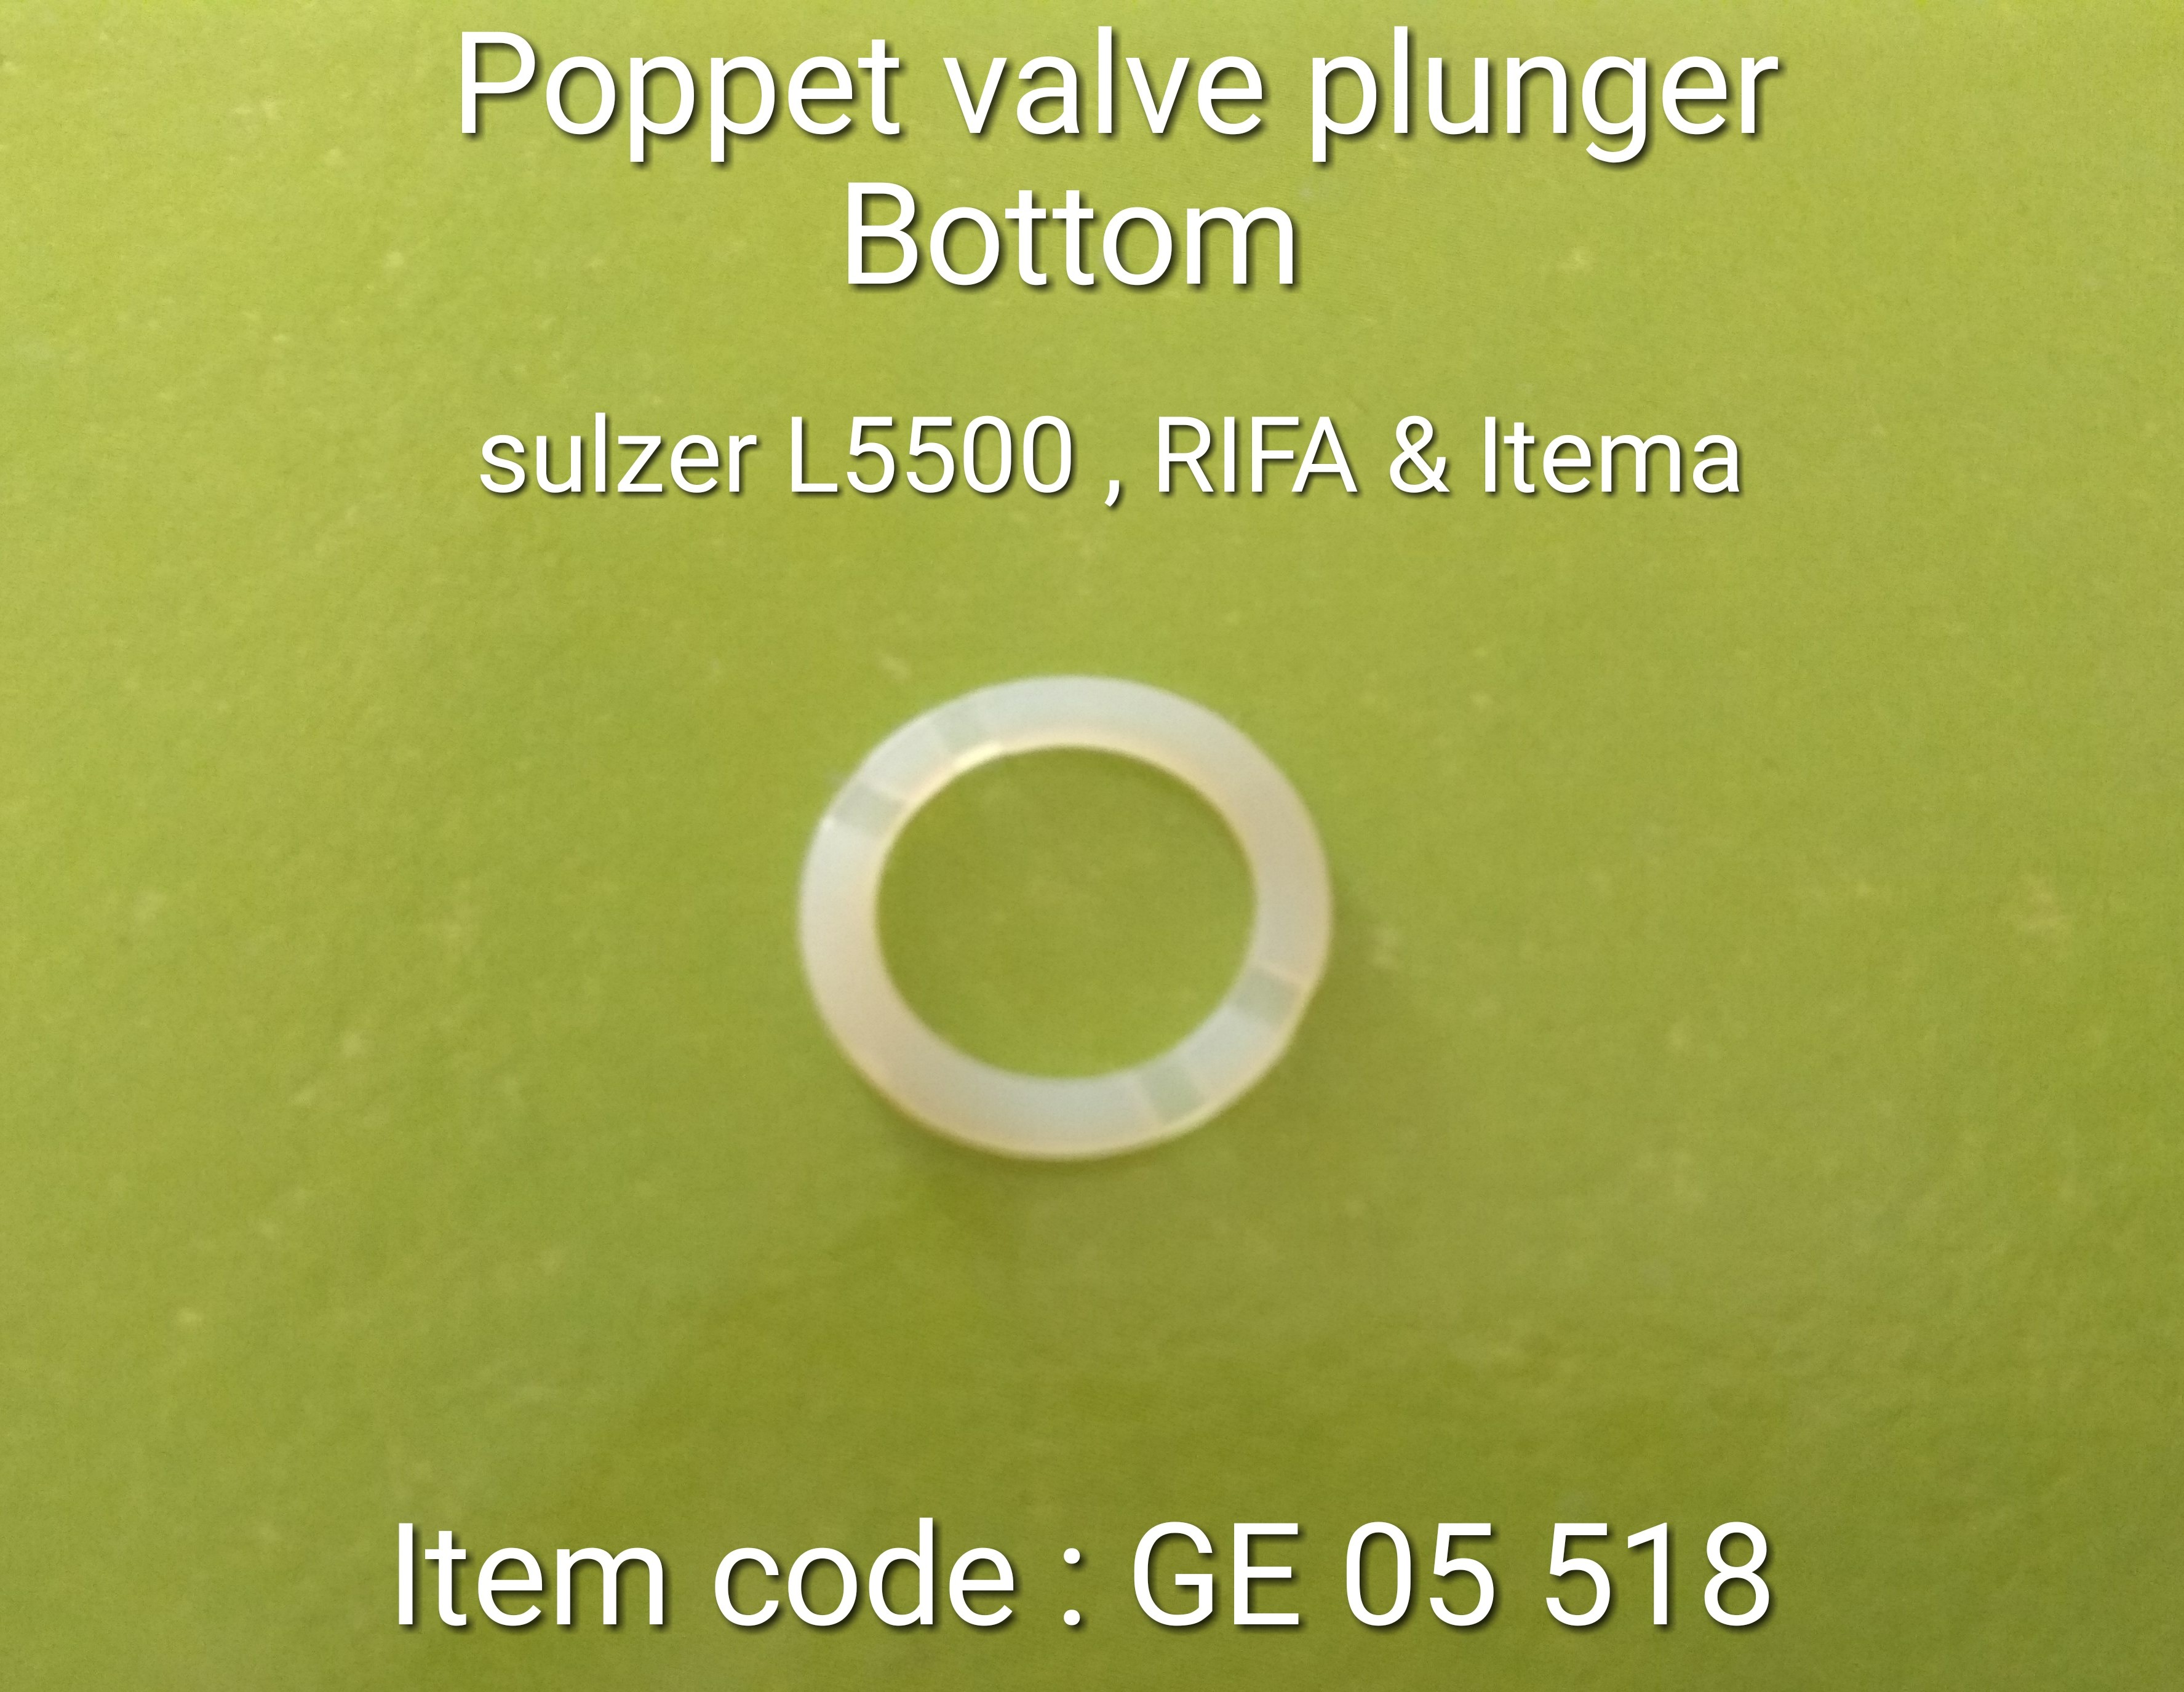 GE_05_518_Poppet_Valve_Plunger_bottom_1_15.jpg